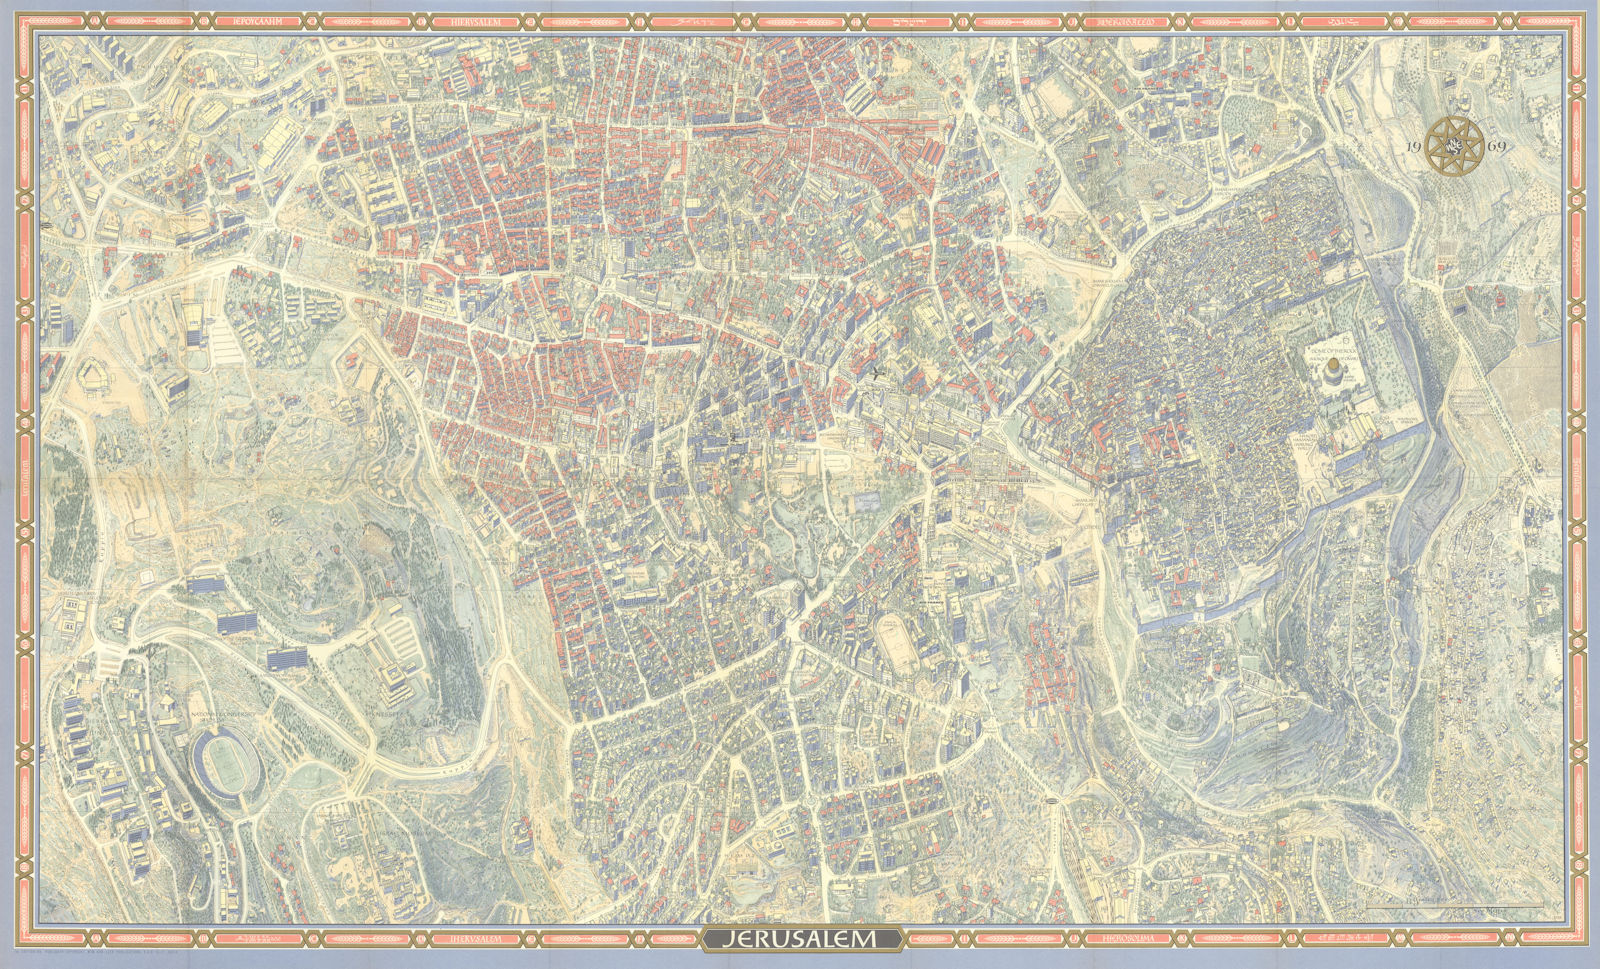 Jerusalem pictorial bird's eye view city plan. Israel. #100 BOLLMANN 1969 map